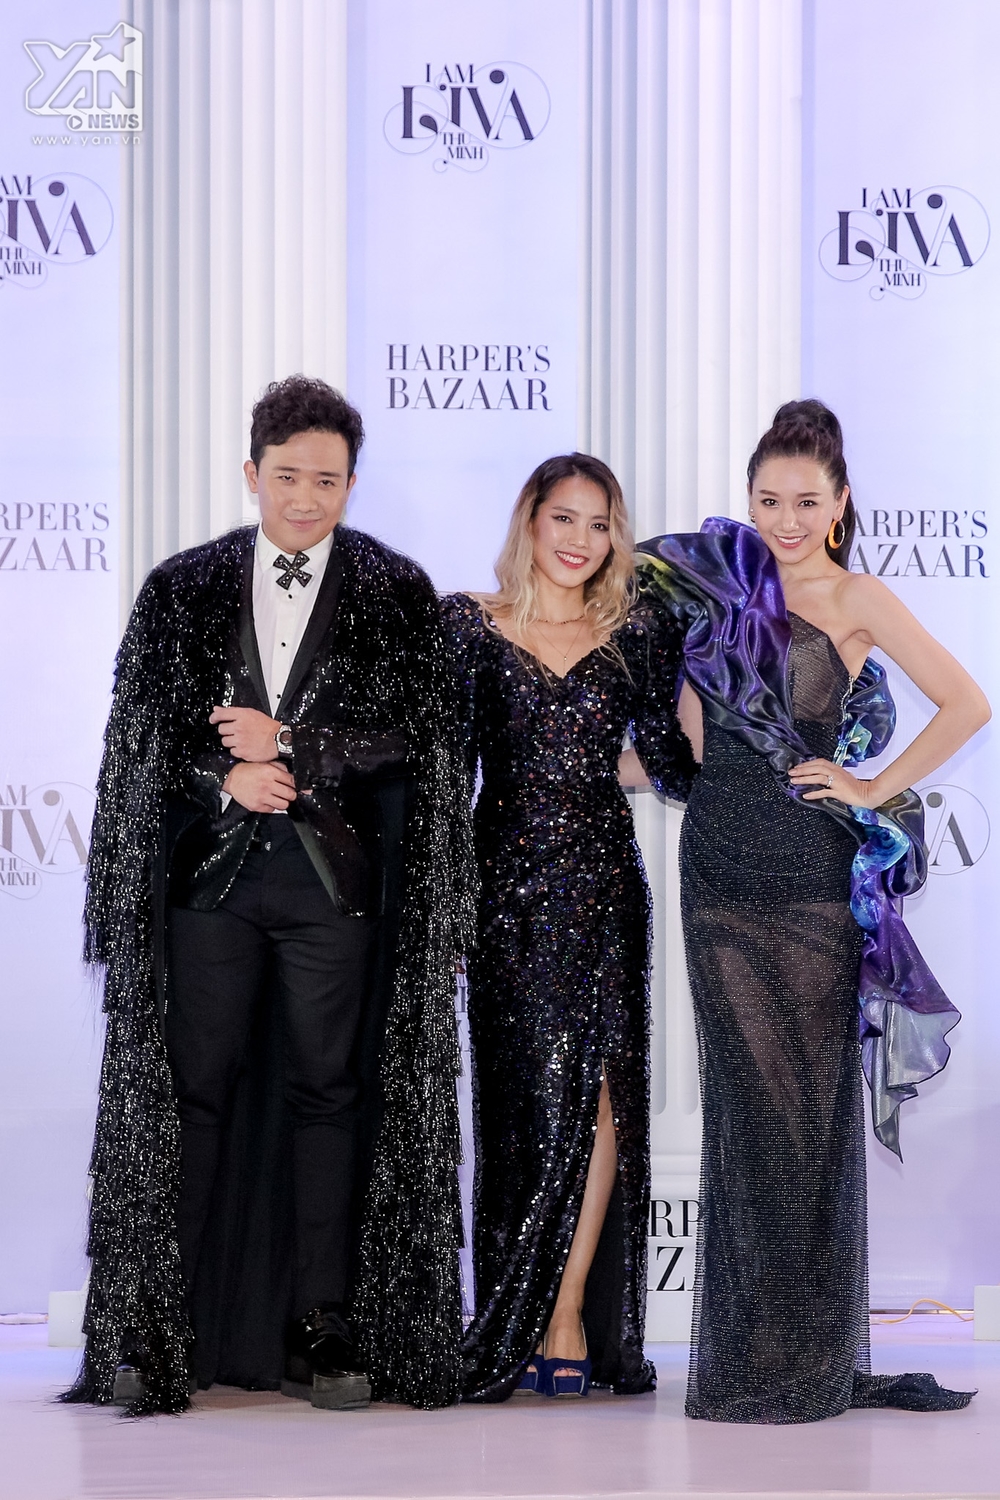  
Vợ chồng Trấn Thành - Hari Won rạng rỡ xuất hiện bên cạnh nữ diva Hàn Quốc So Hyang.